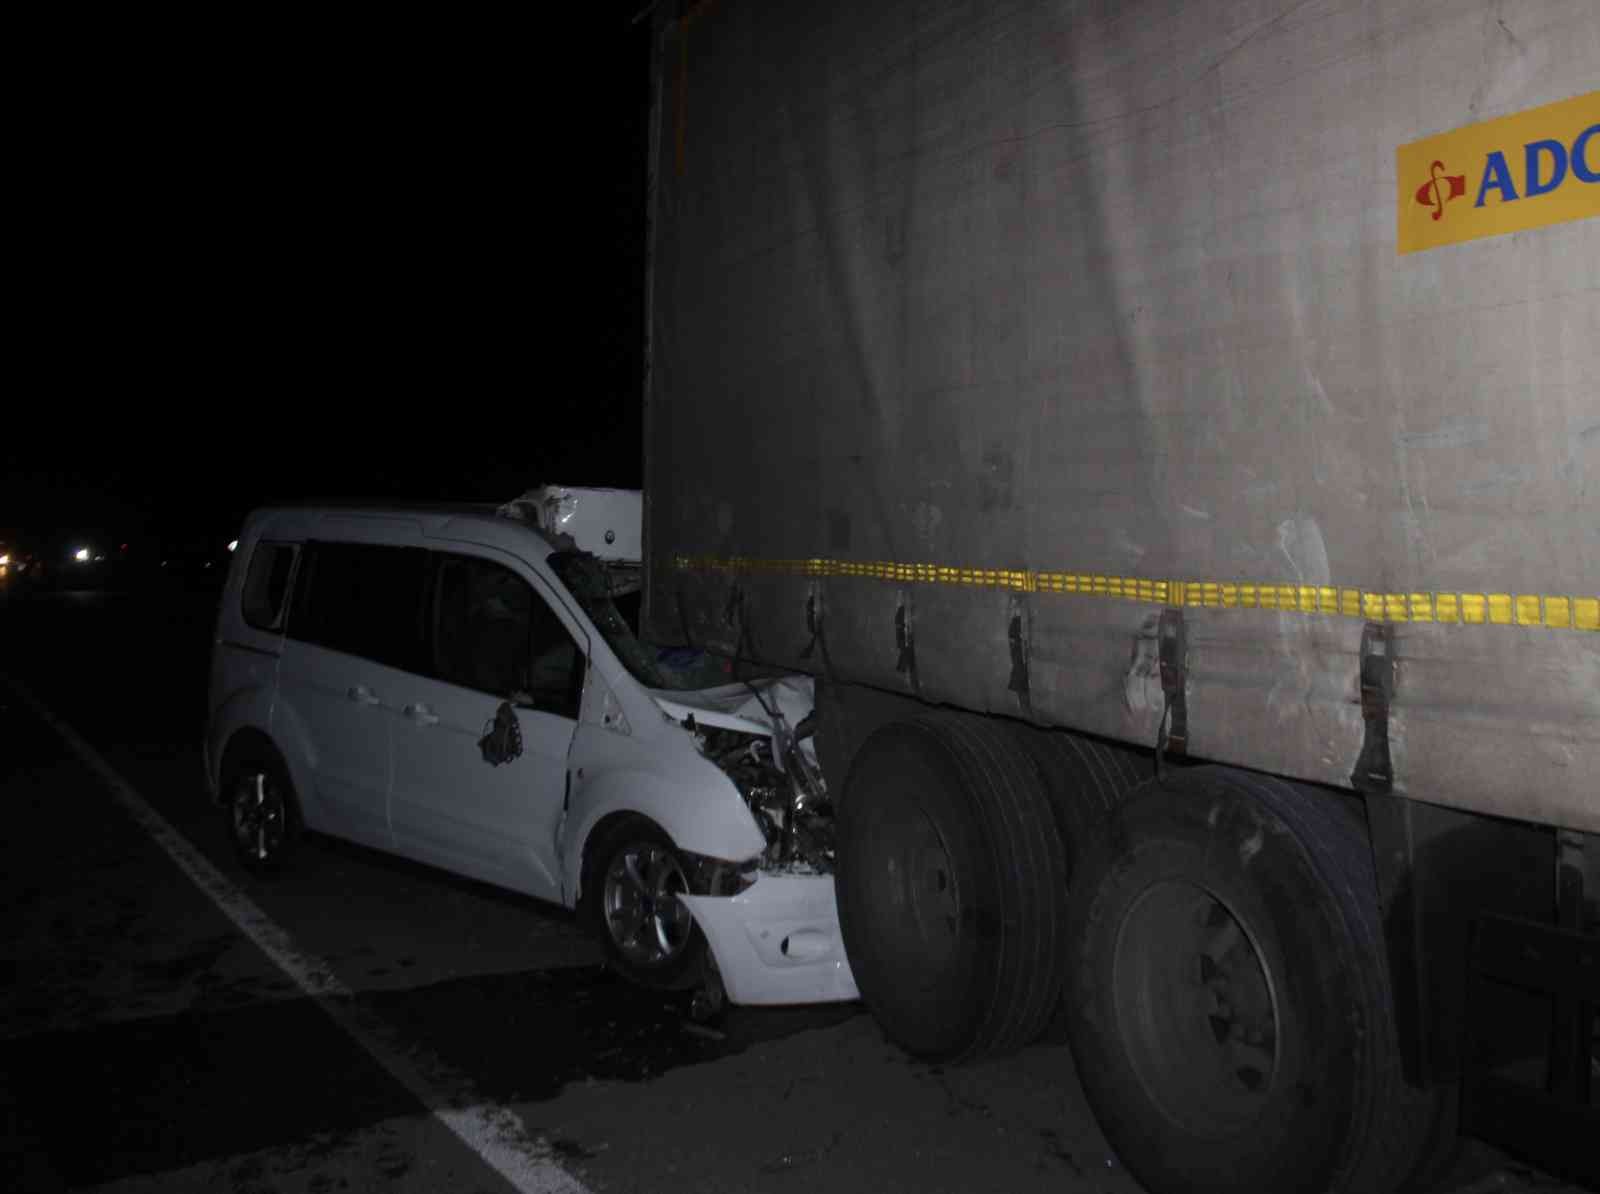 Konya’da 4 araç zincirleme kazaya karıştı: 1 ölü, 1 yaralı #konya